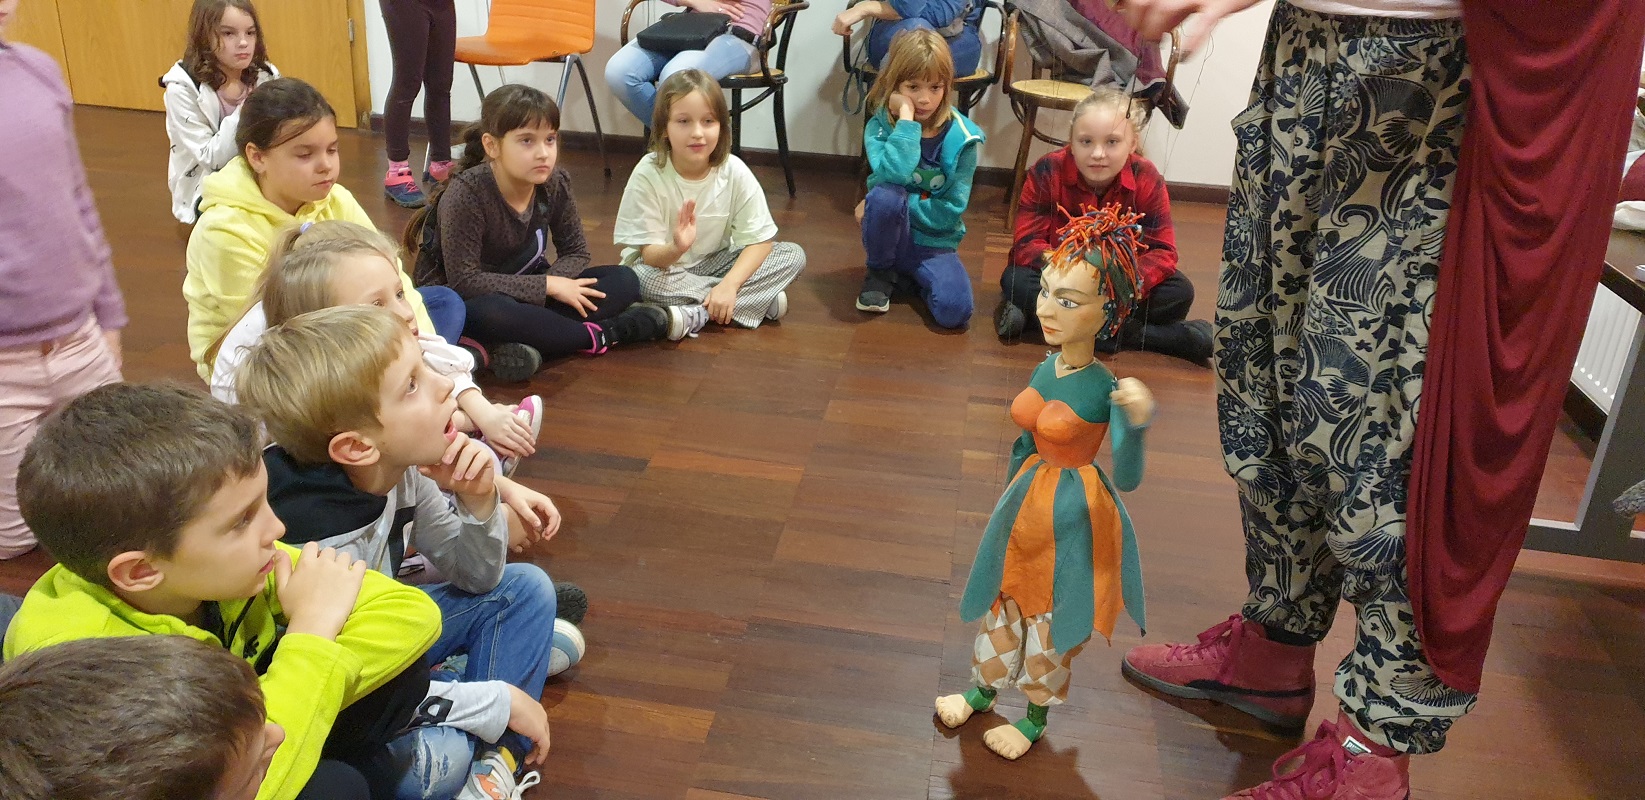 Marionetka-najtrudniejsza do animacji lalka teatralna.